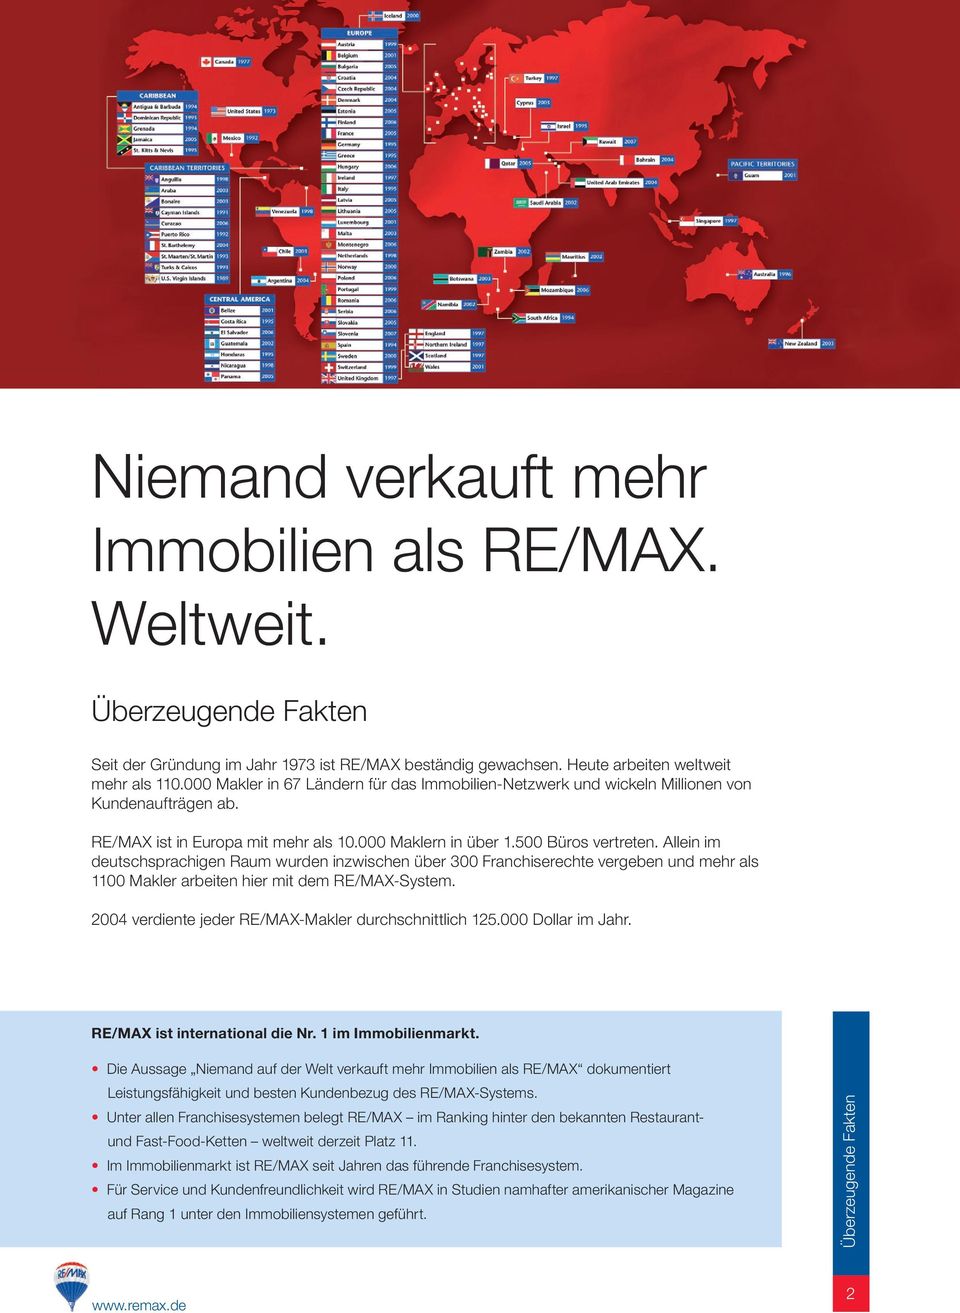 Allein im deutschsprachigen Raum wurden inzwischen über 300 Franchiserechte vergeben und mehr als 1100 Makler arbeiten hier mit dem RE/MAX-System.